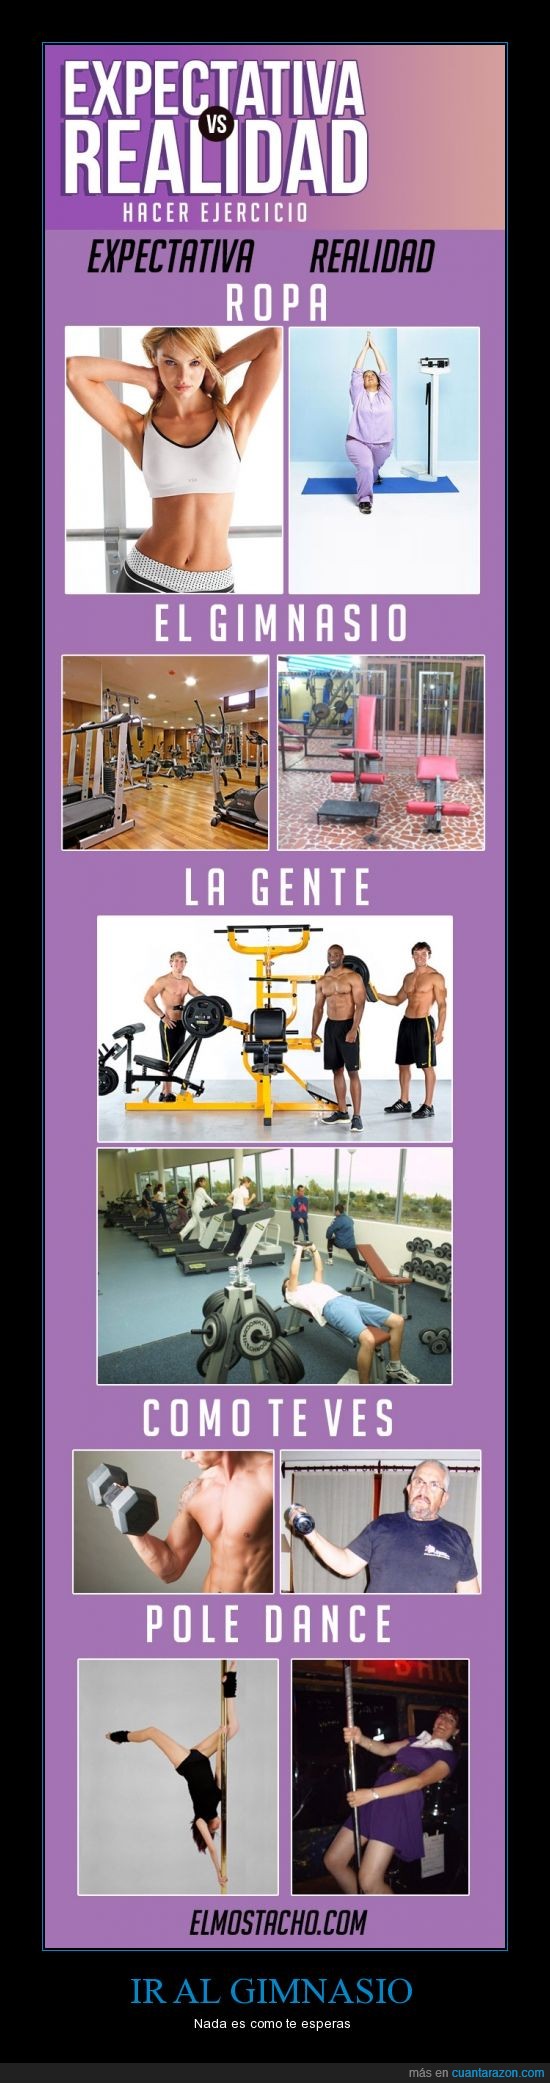 gimnasio,ejercicio,barra,máquinas,pesas,gente,ropa